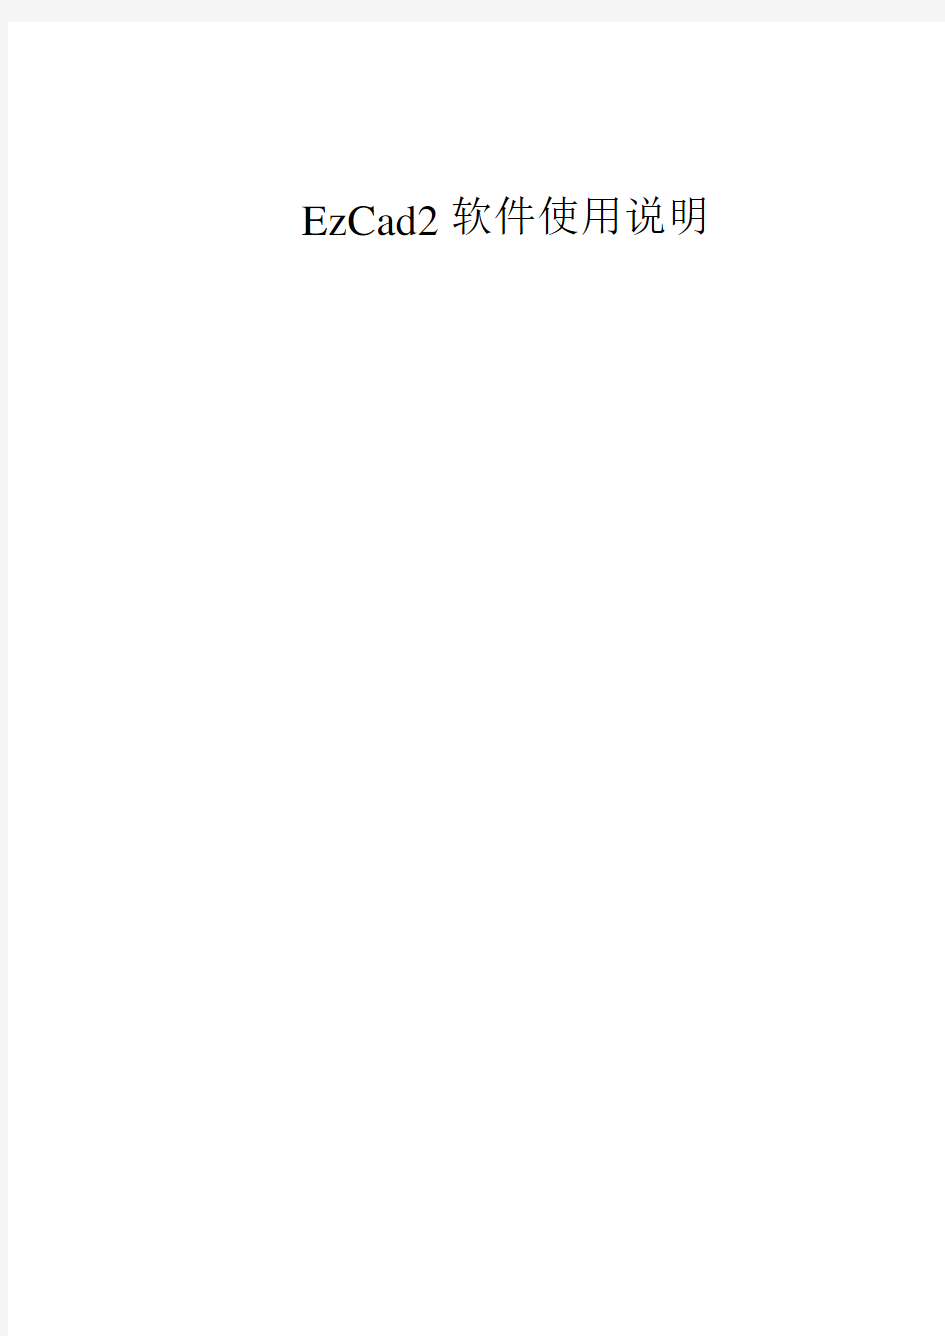 EzCad2软件使用说明书